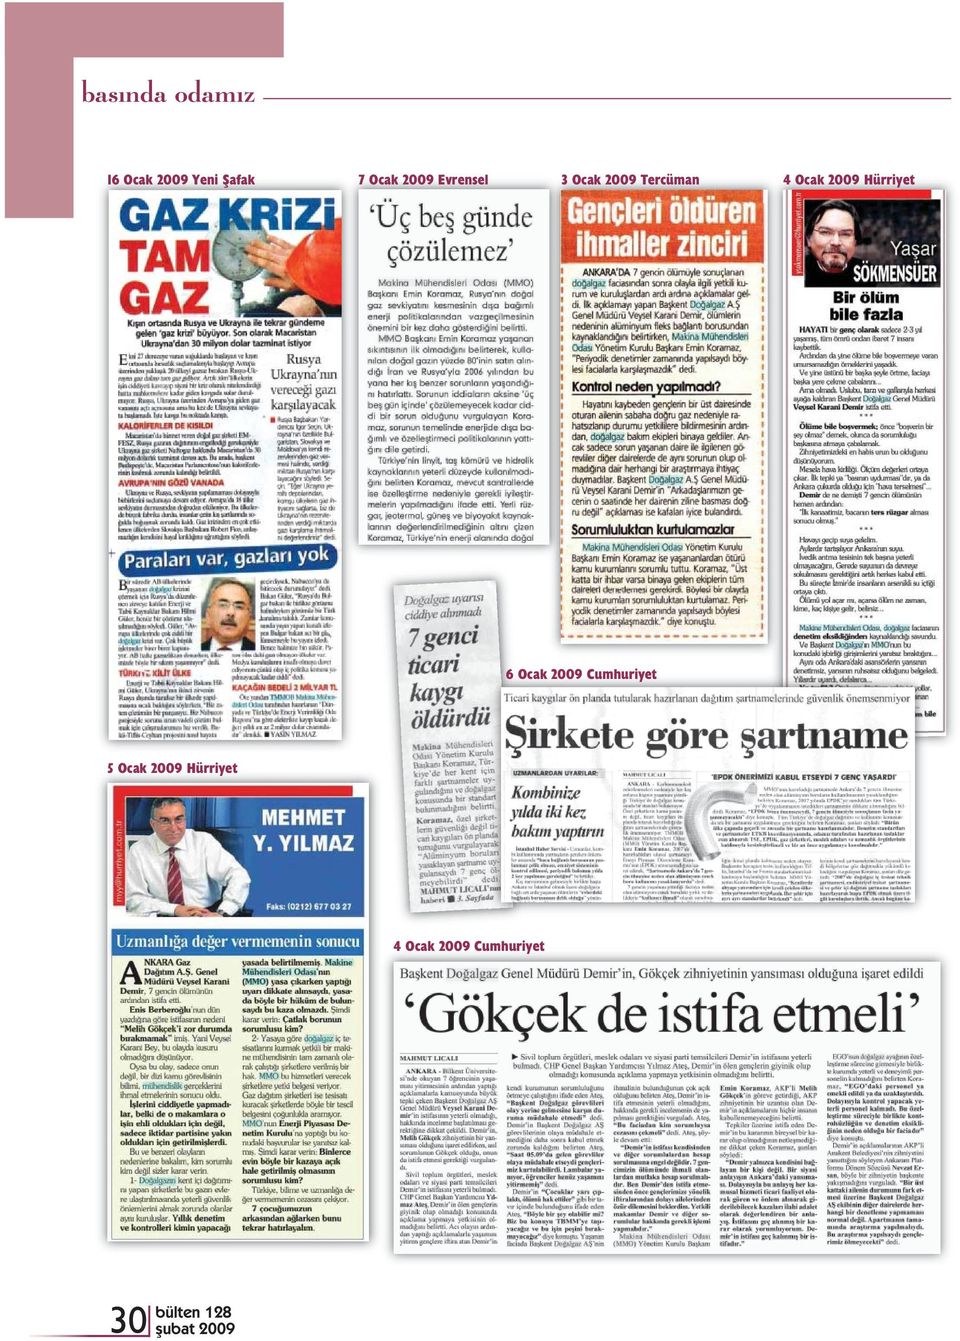 2009 Hürriyet 6 Ocak 2009 Cumhuriyet 5